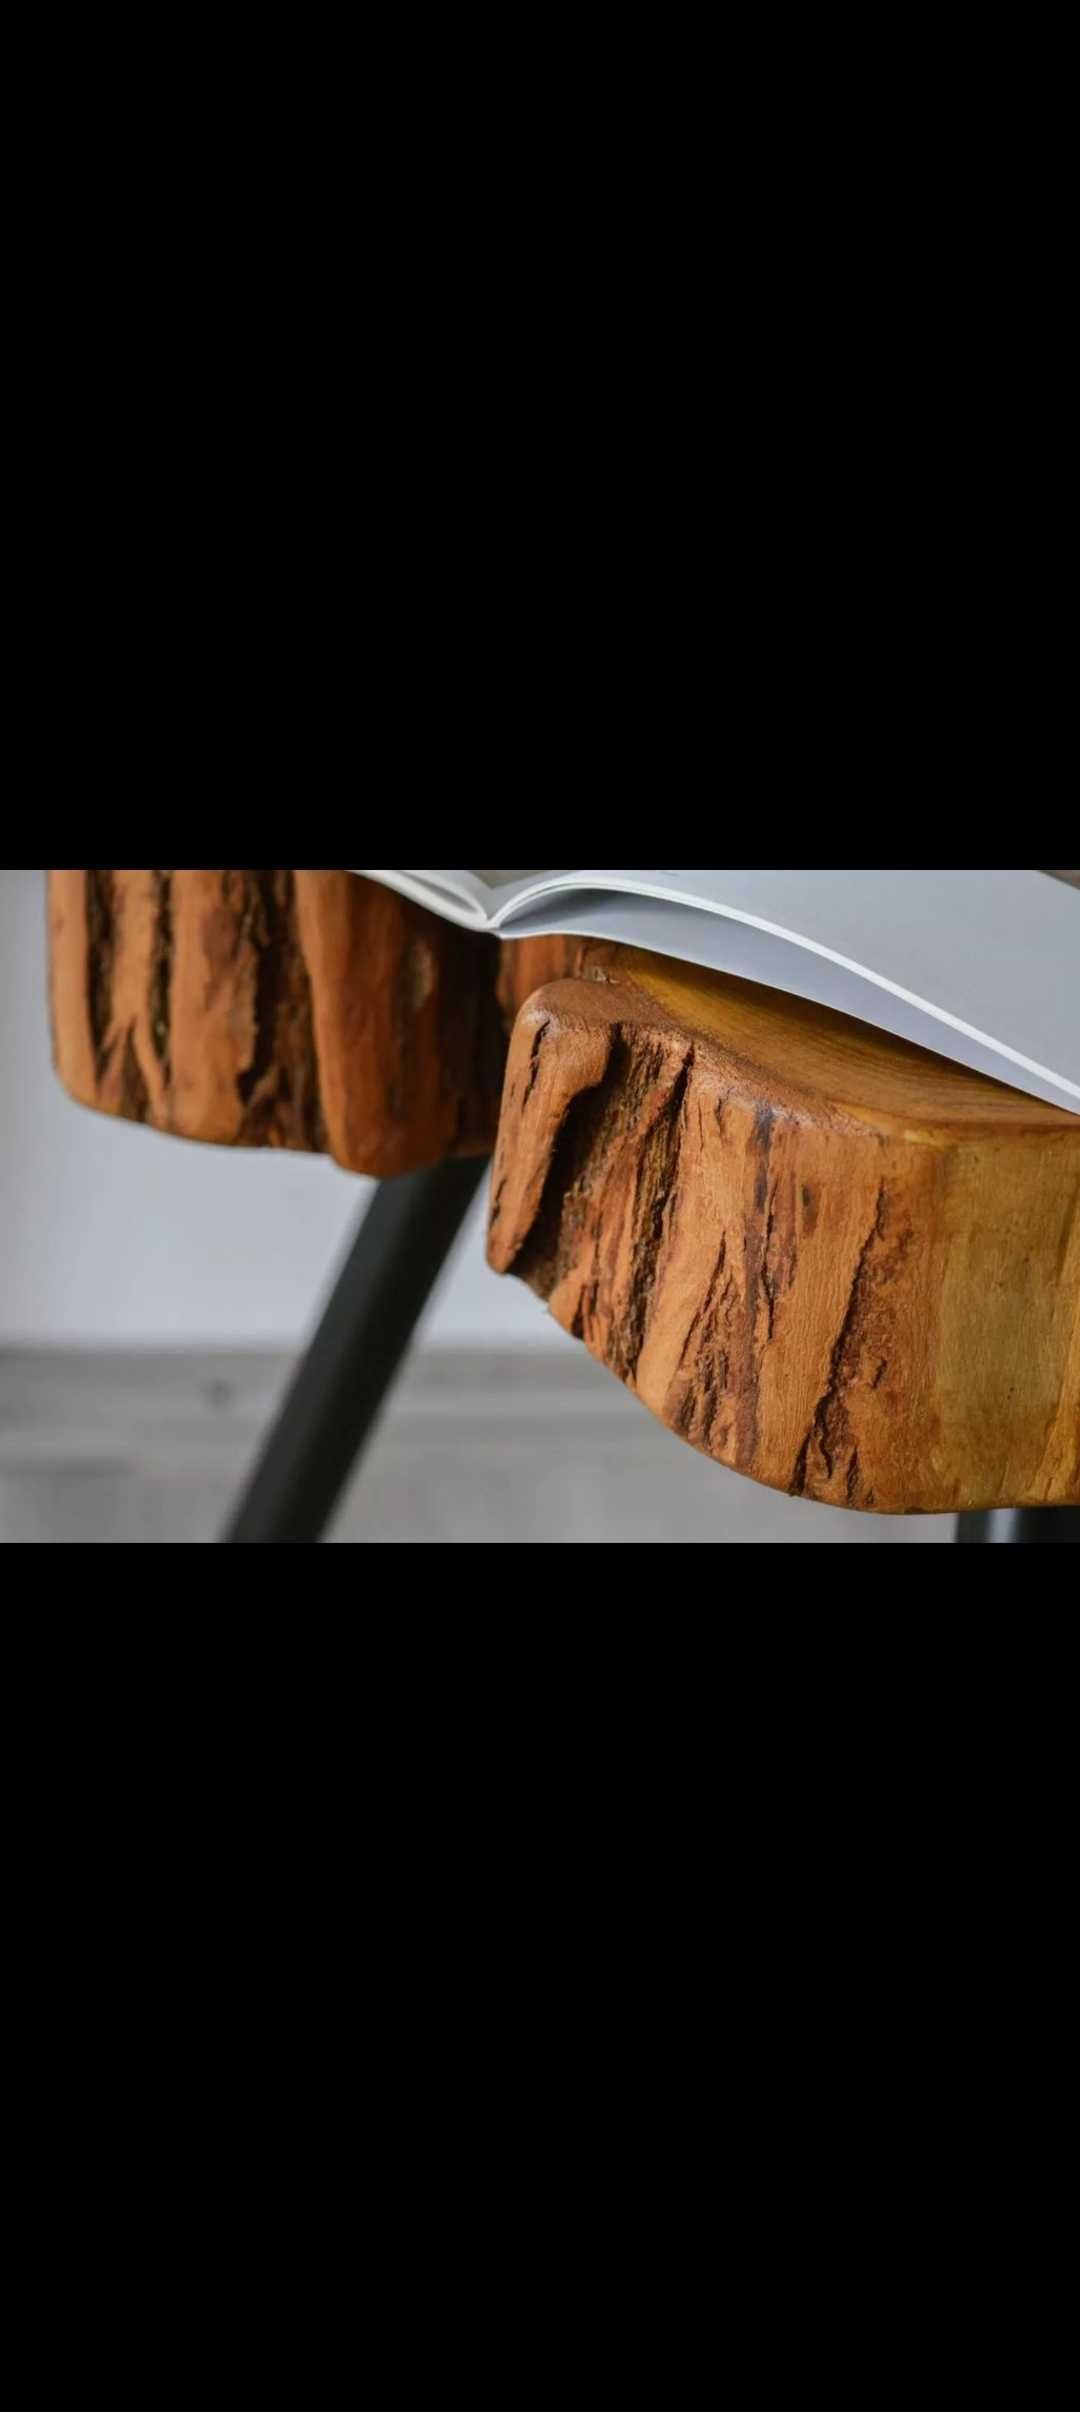 Side table din lemn masiv!